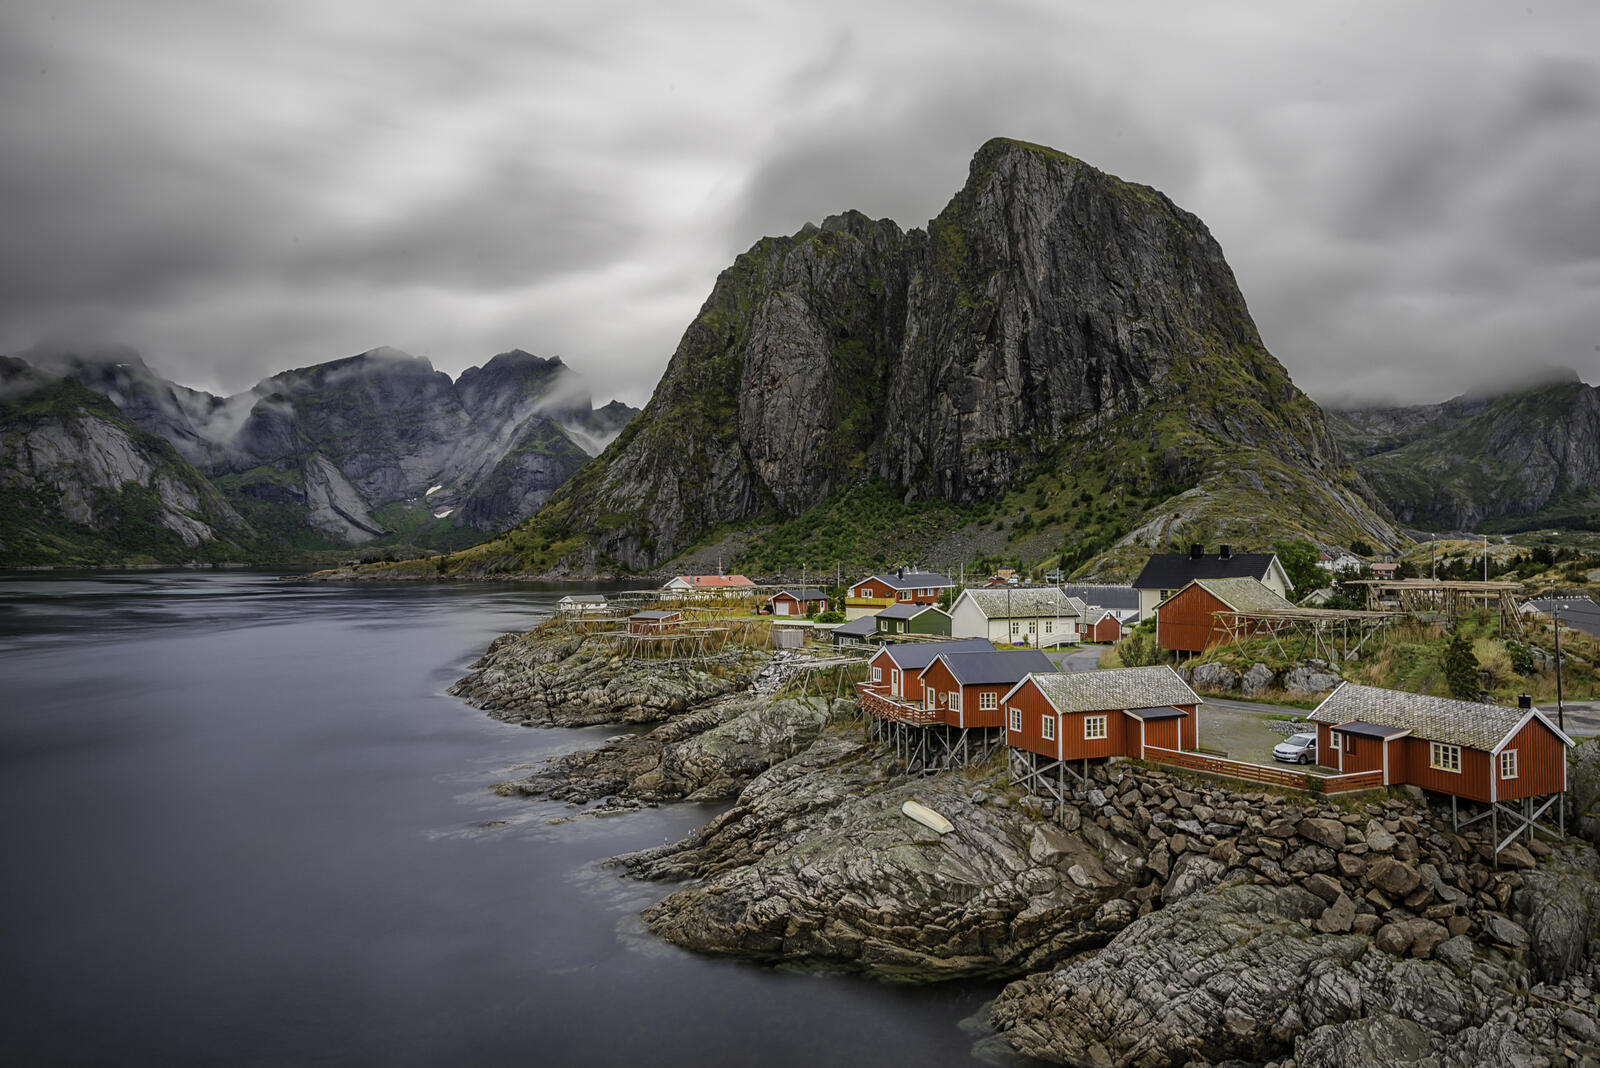 Обои пейзаж Норвегия Lofoten Islands на рабочий стол